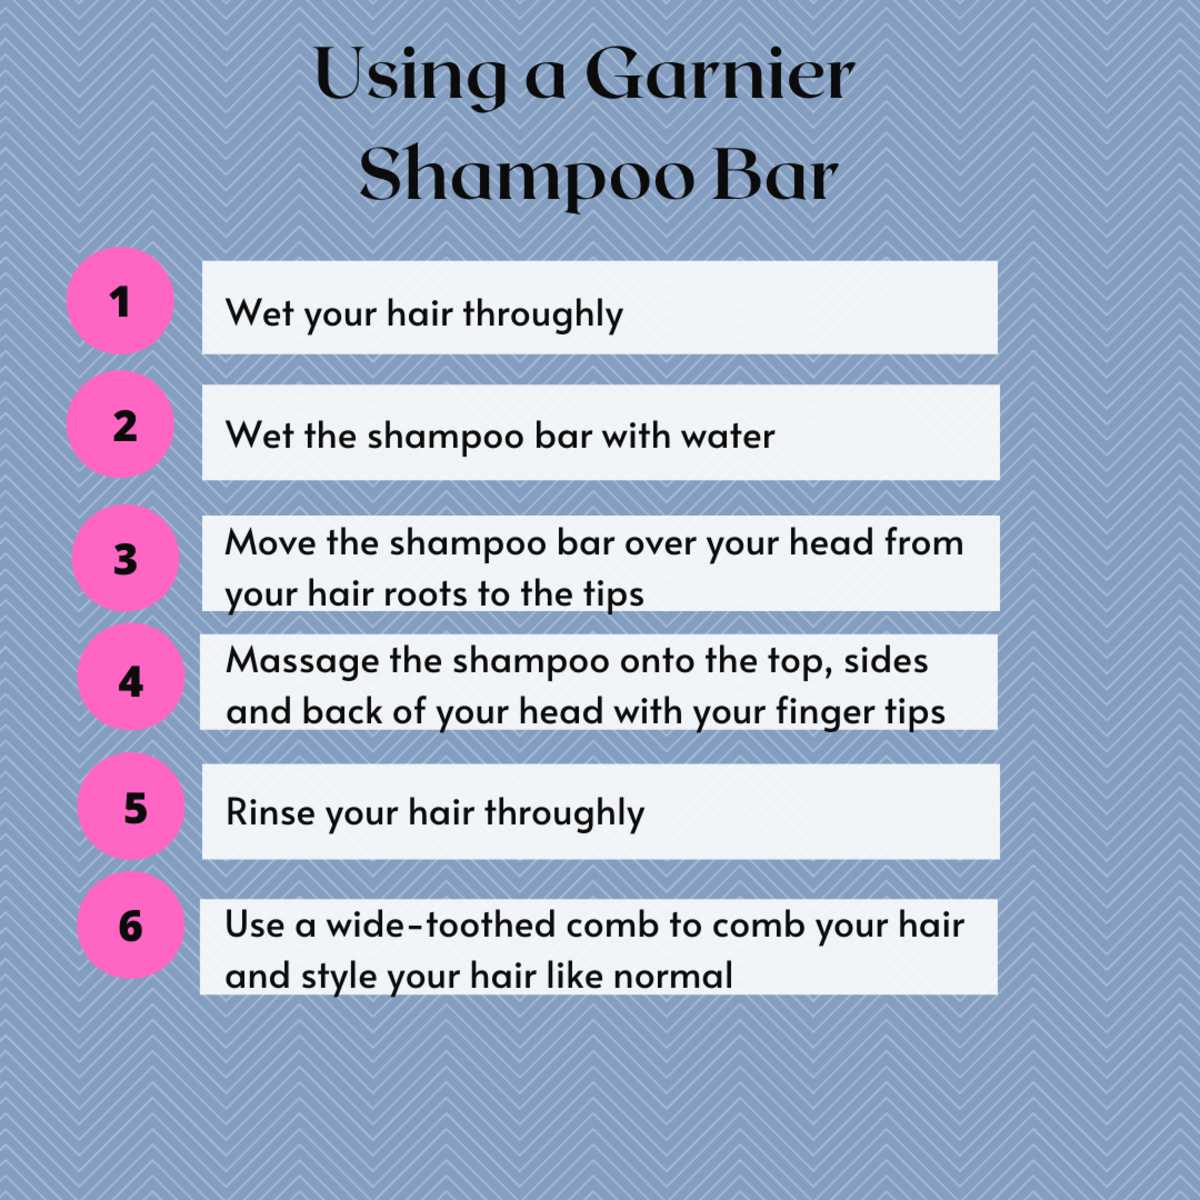 Instructions on how to use a shampoo bar.